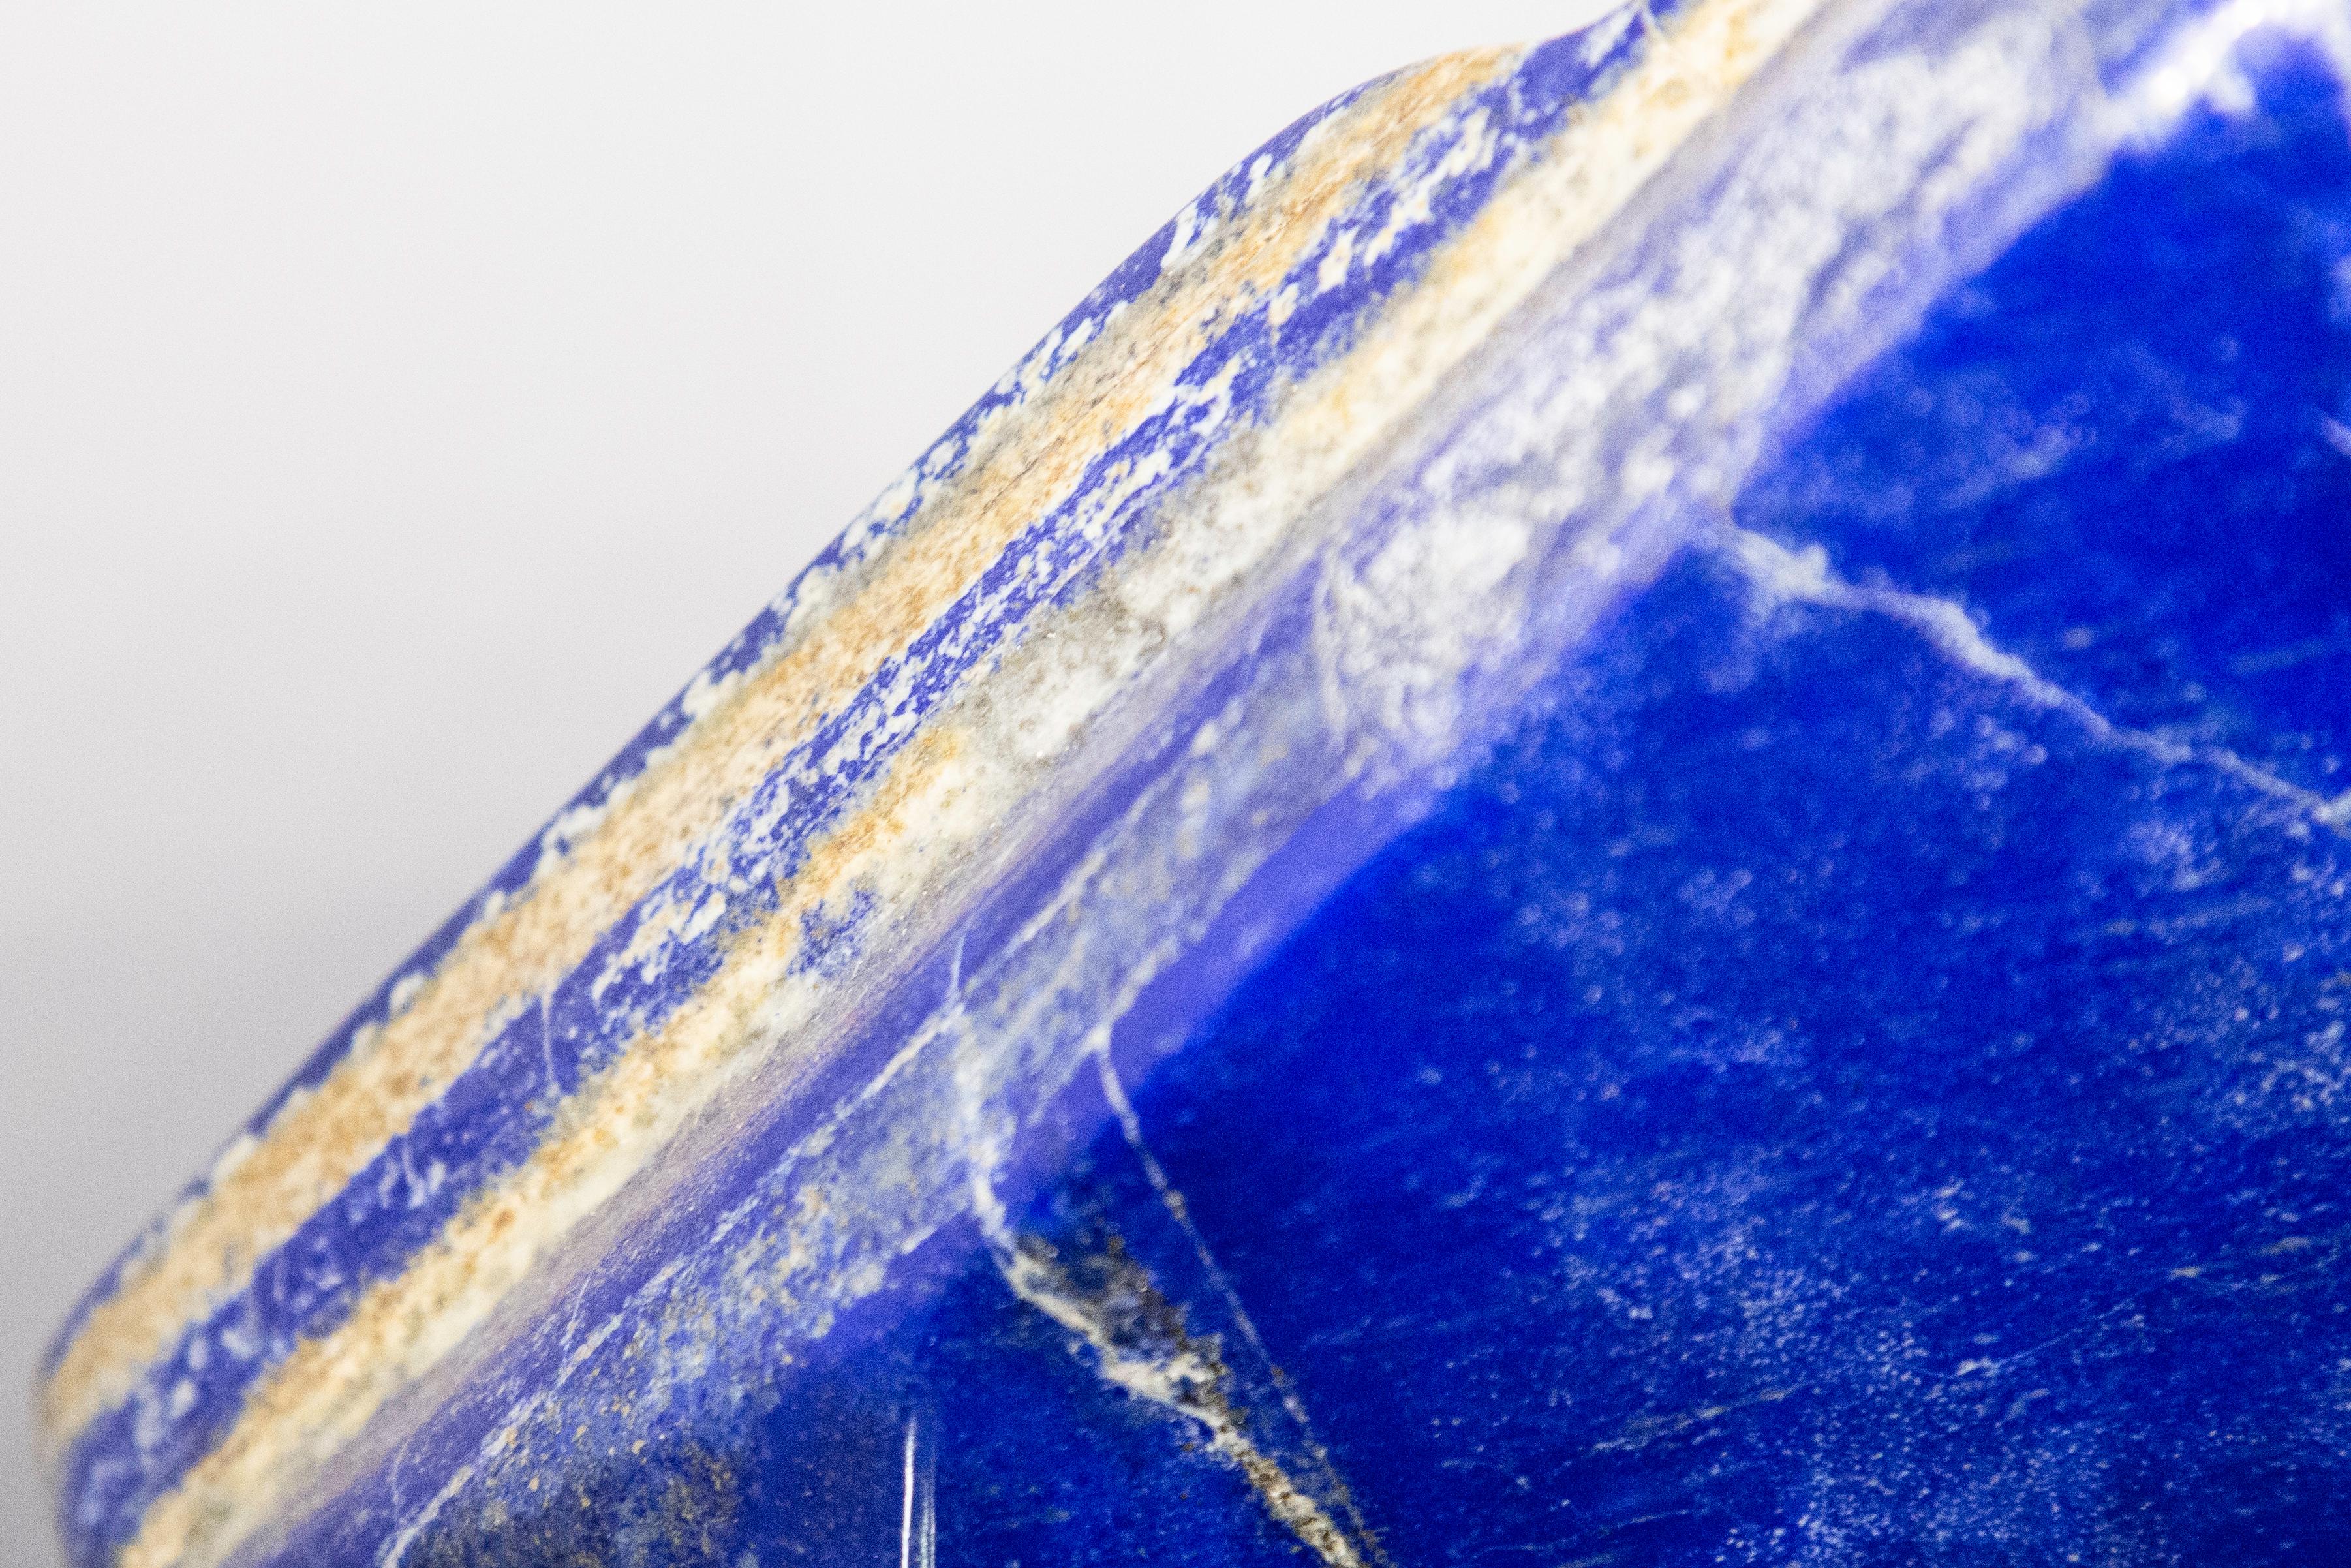 lapis lazuli specimen